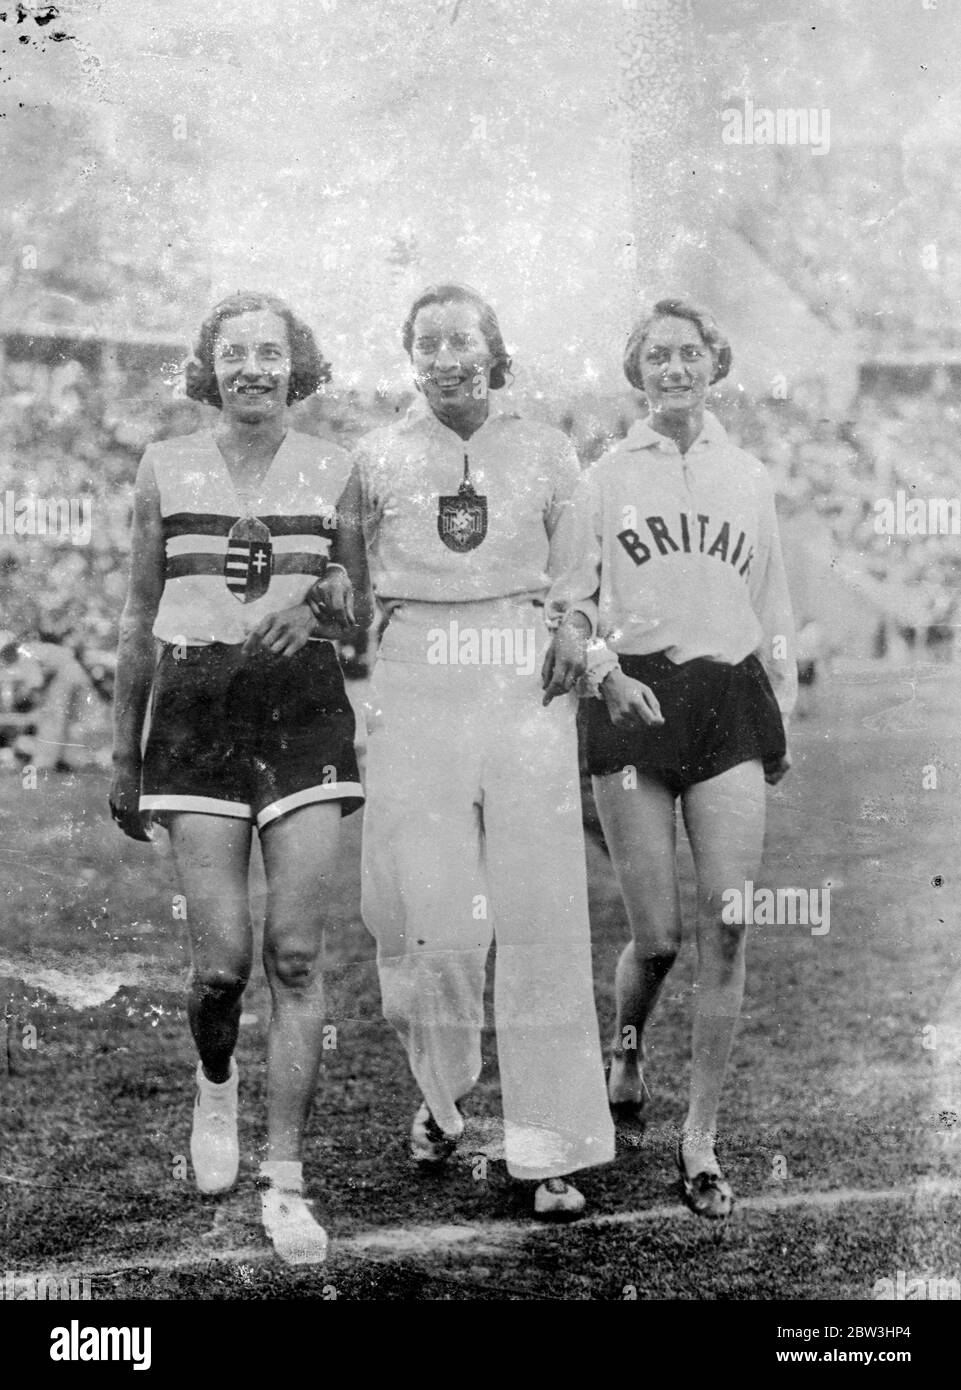 Cravates de fille anglaise dans le saut olympique élevé - puis la victoire est arrachée loin . Mlle Dorothy Odam, de Grande-Bretagne, a fait une tentative galante de gagner l'épreuve de saut en hauteur aux Jeux Olympiques de Berlin . Elle est liée avec Frauléin Ibolya Csák de Hongrie à 5 pieds . 3 dans mais dans le saut - hors de l'événement a été gagné par Fraulain Csák . Fraulain Elfriede Kaun, d'Allemagne, était troisième . Photos : Dorothy Odam ( à droite ) avec Ibolya Csák ( à gauche ) et Elfriede Kaun après l'événement . [Fille de 18 a abandonné de l'équipe britannique d'athlétisme - les suspects de short étaient trop courts parce qu'elle n'est pas amable à la discipline , Mlle Dorothy Oda Banque D'Images